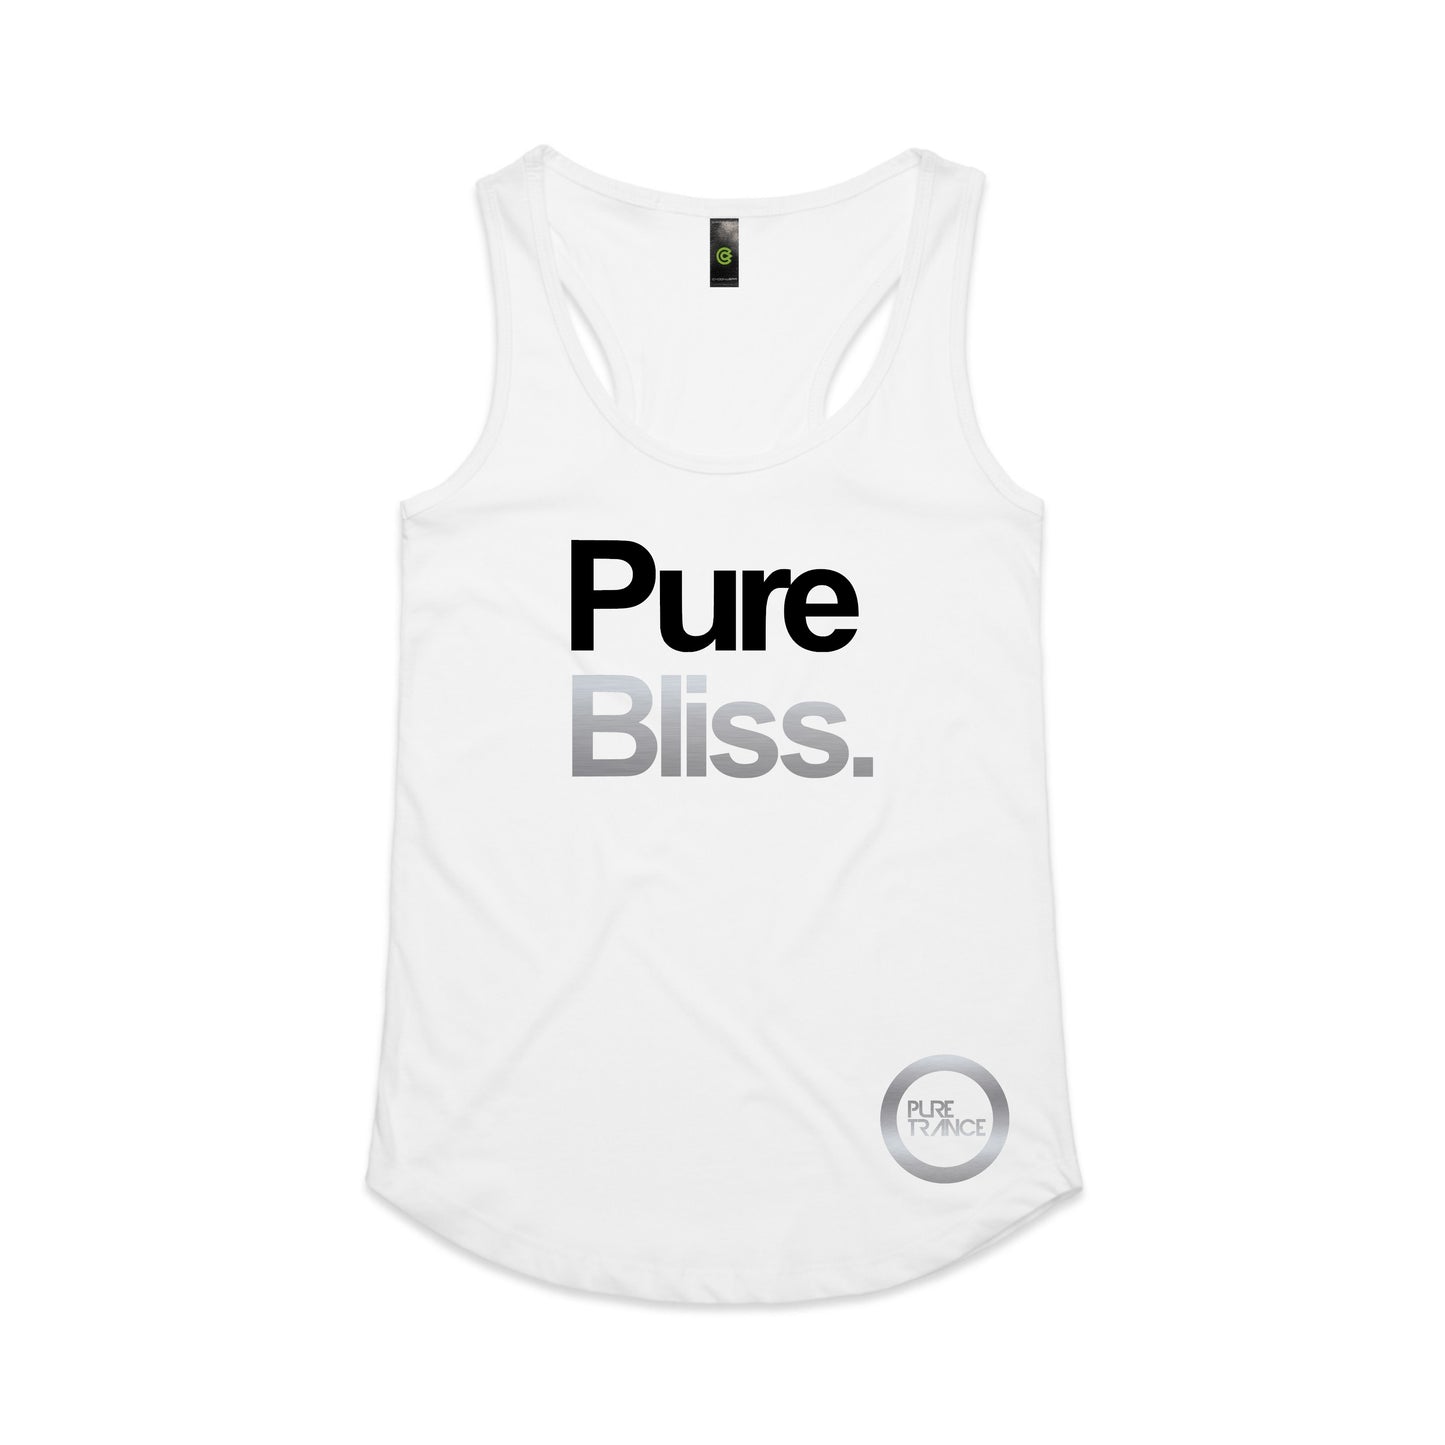 Pure Bliss. Women's Tank